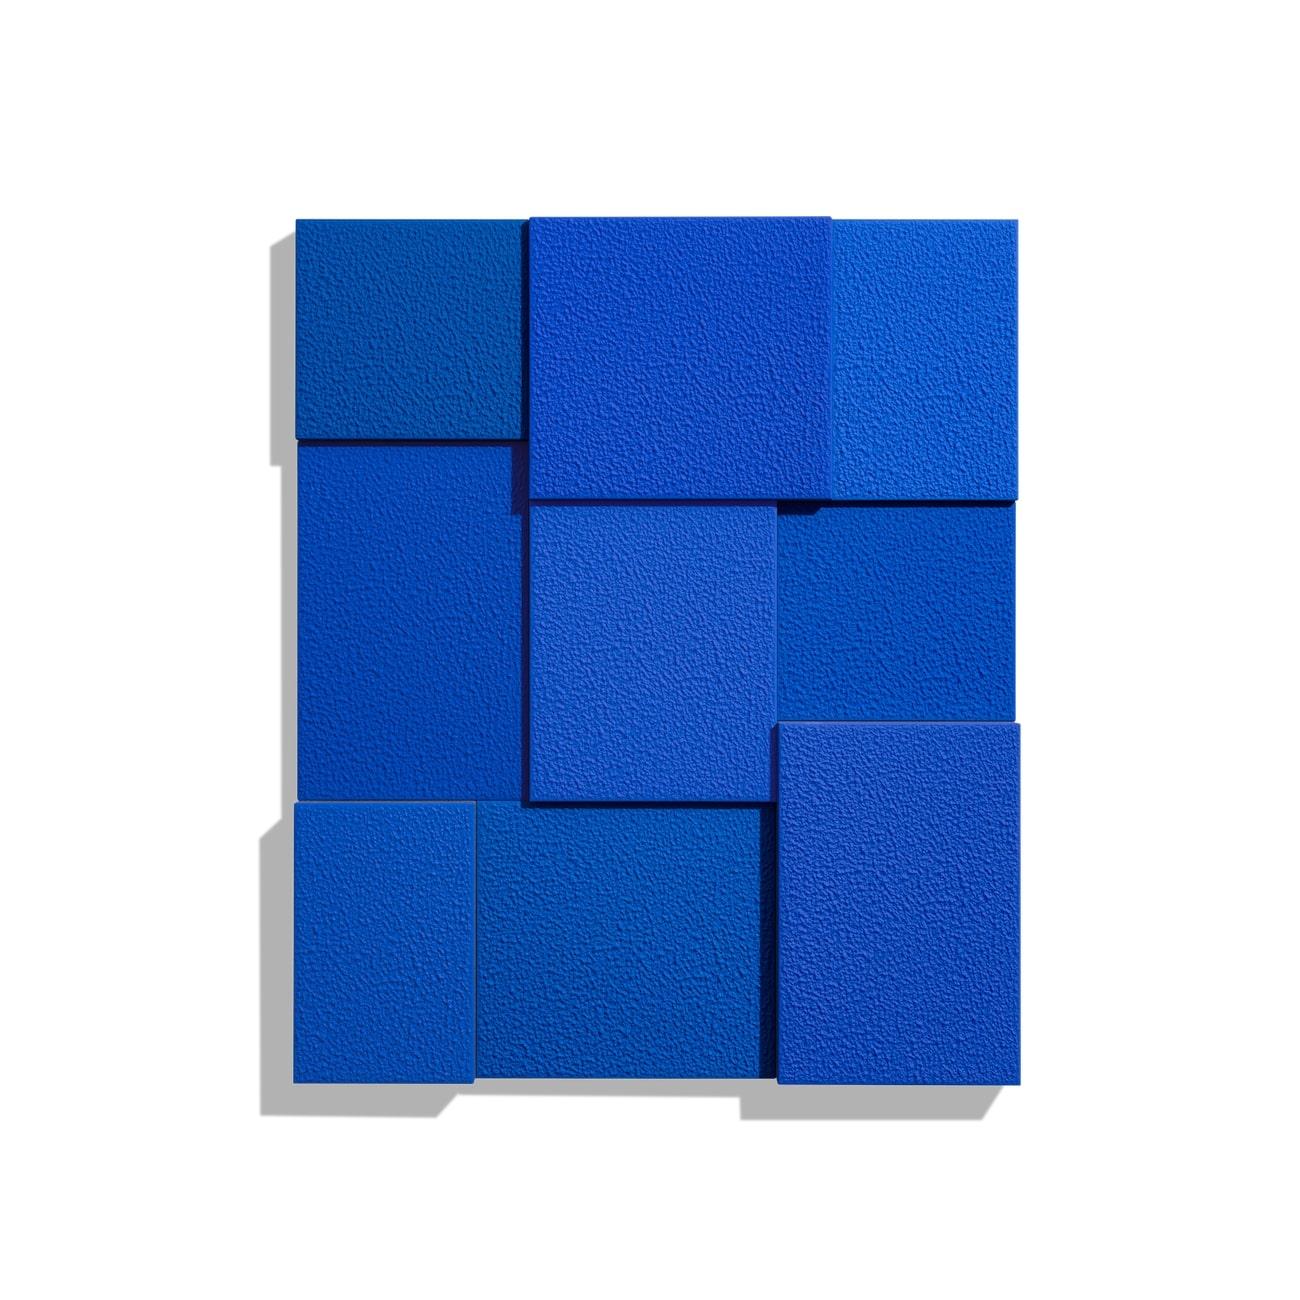 Blau, Neunmal – Print von Peter Halley